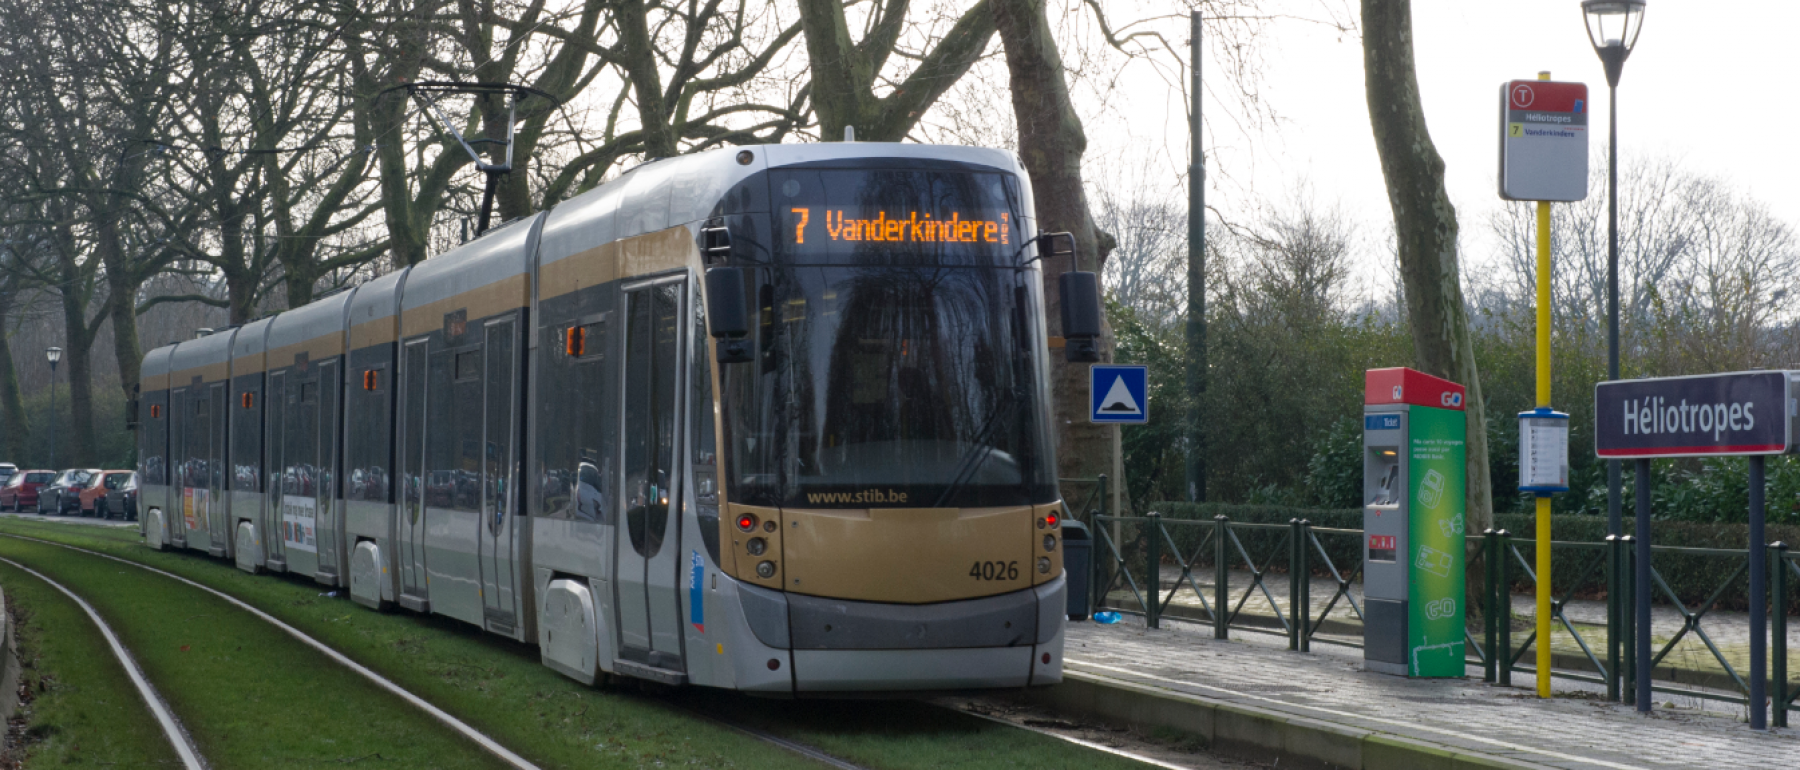 tram 7 vanderkindere (1)